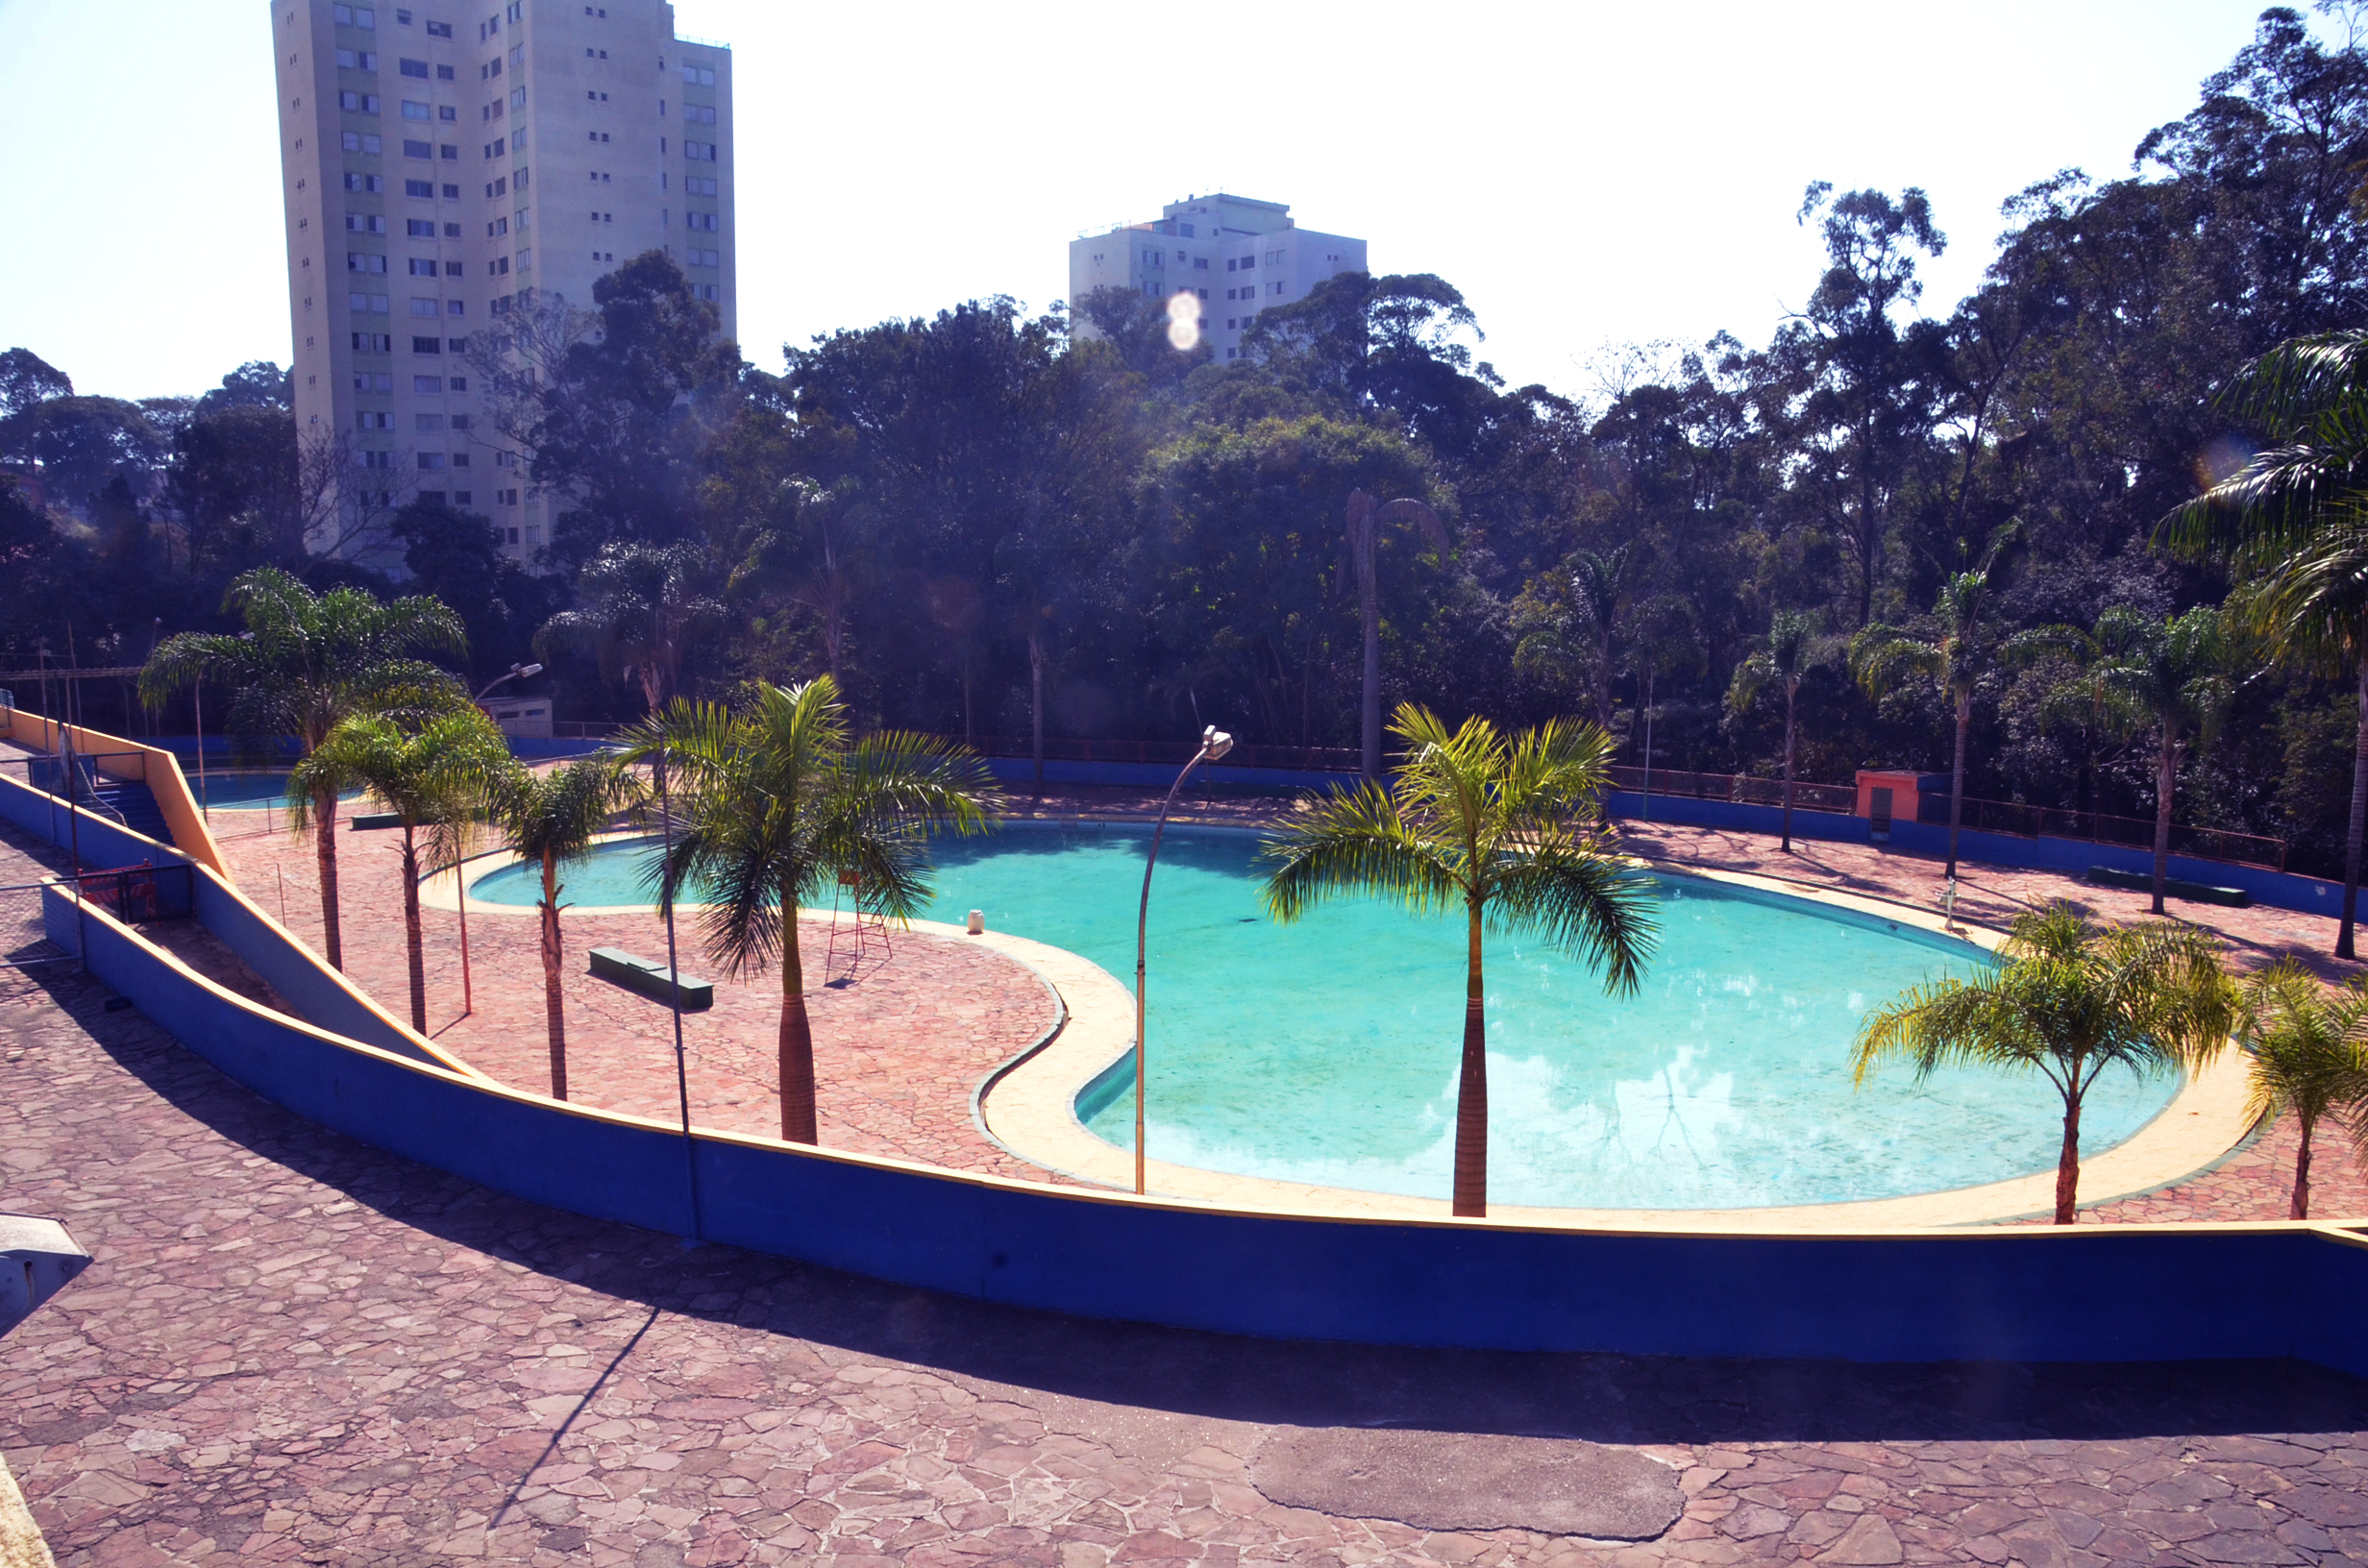 Foto do Centro Esportivo Pirituba durante o dia. No centro da imagem estão algumas palmeiras e, atrás delas, a piscina.